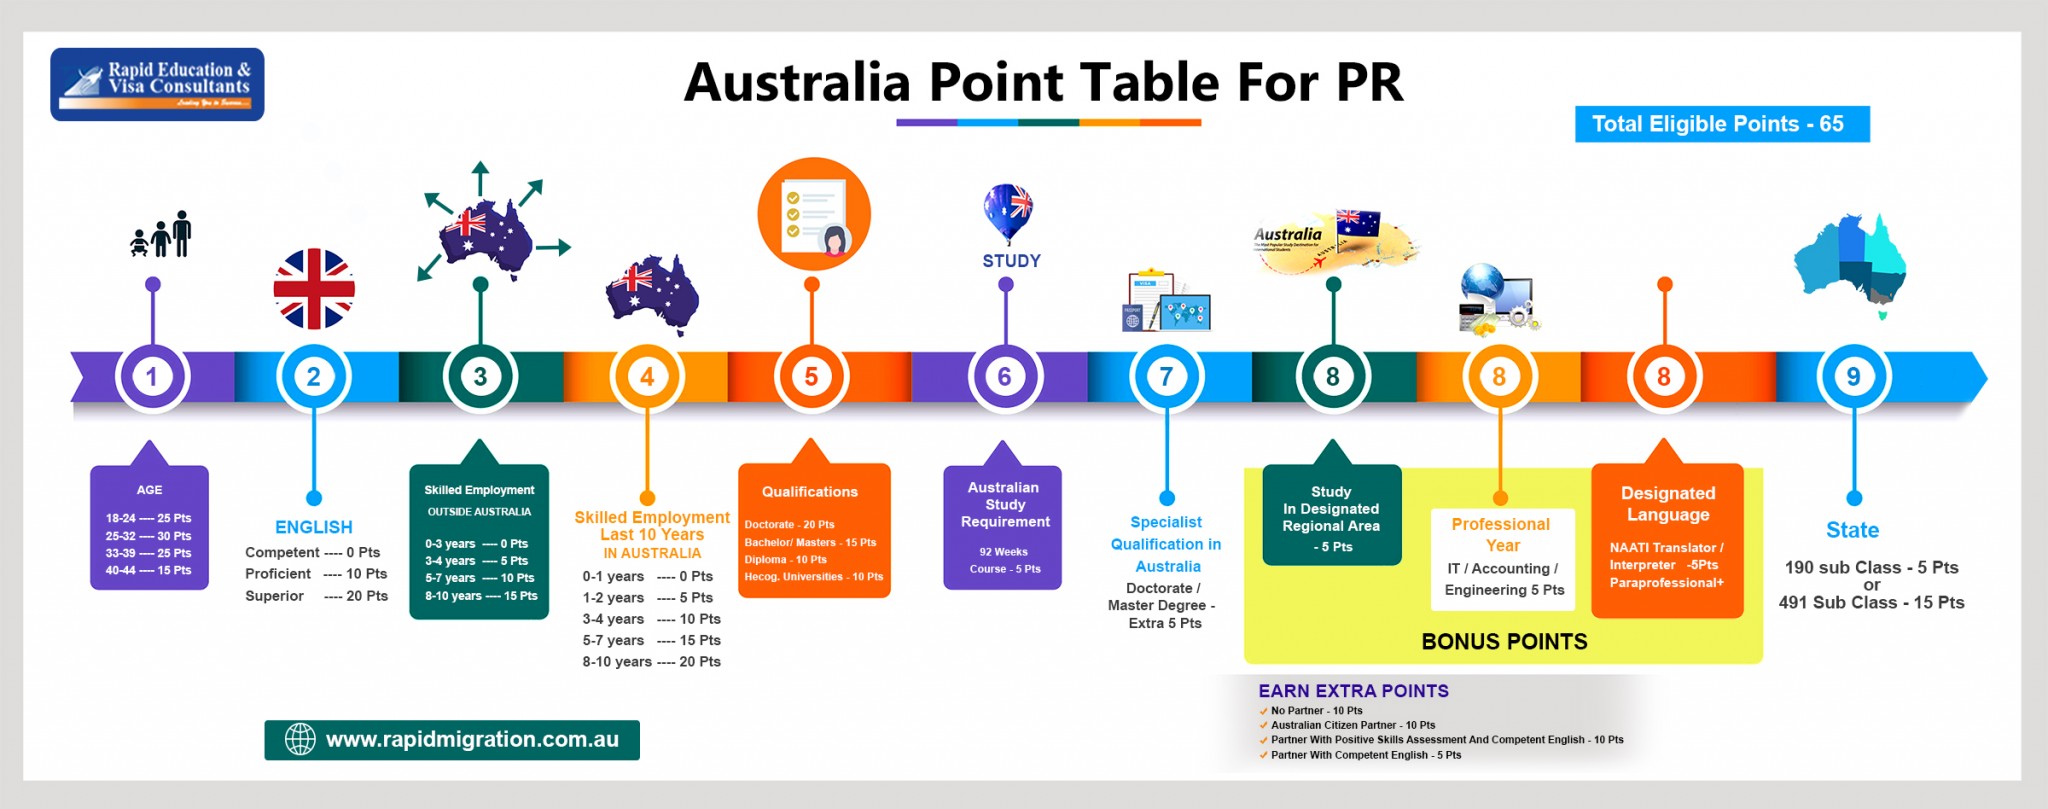 Australia Point Table for PR - Credit: rapidmigration.com.au